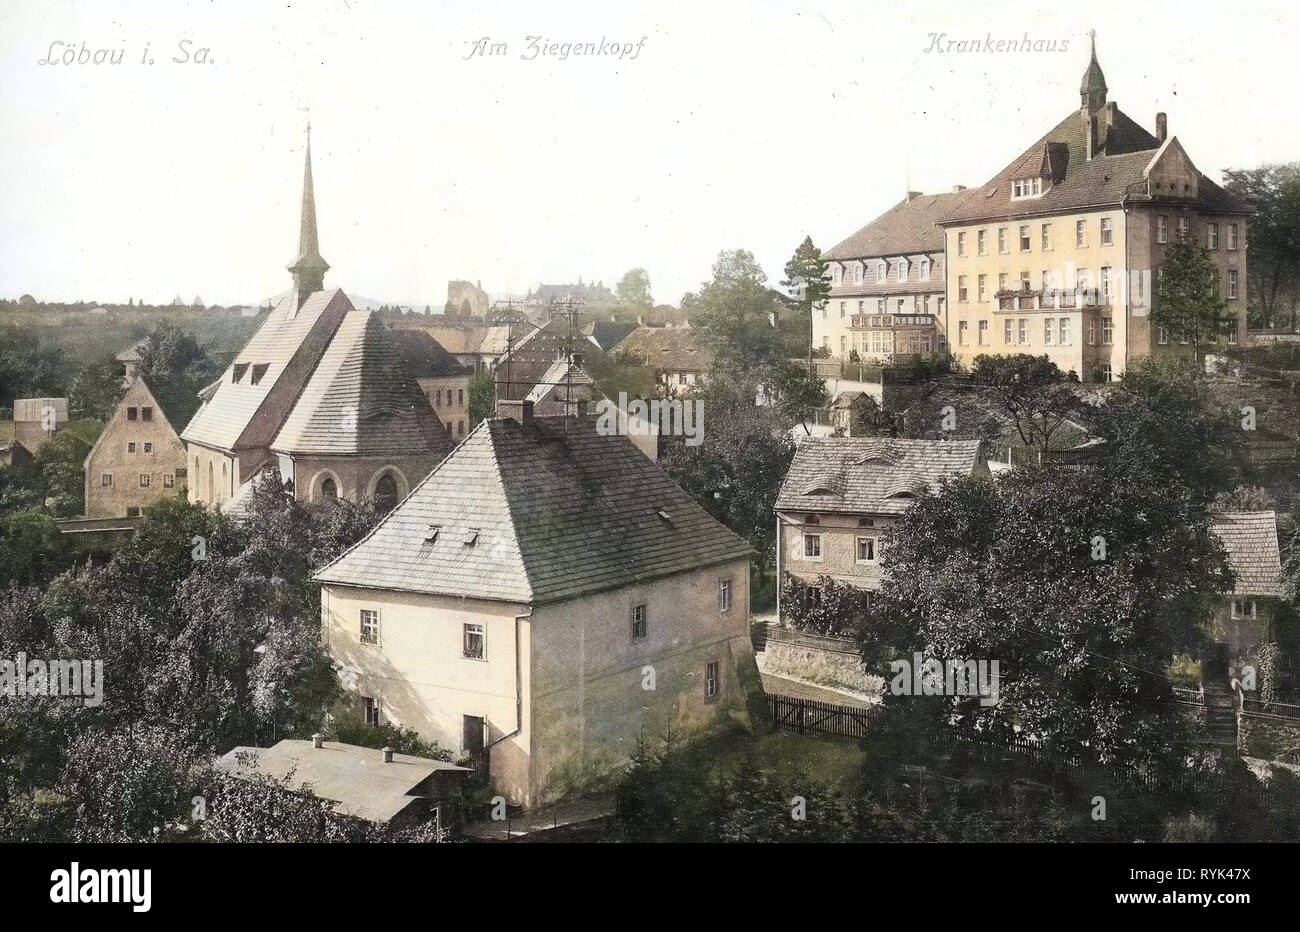 Les hôpitaux en Saxe, bâtiments à Löbau, Heilig-Geist-Kirche (Löbau), 1914, Landkreis Görlitz, Löbau, suis Ziegenkopf, Krankenhaus, Allemagne Banque D'Images